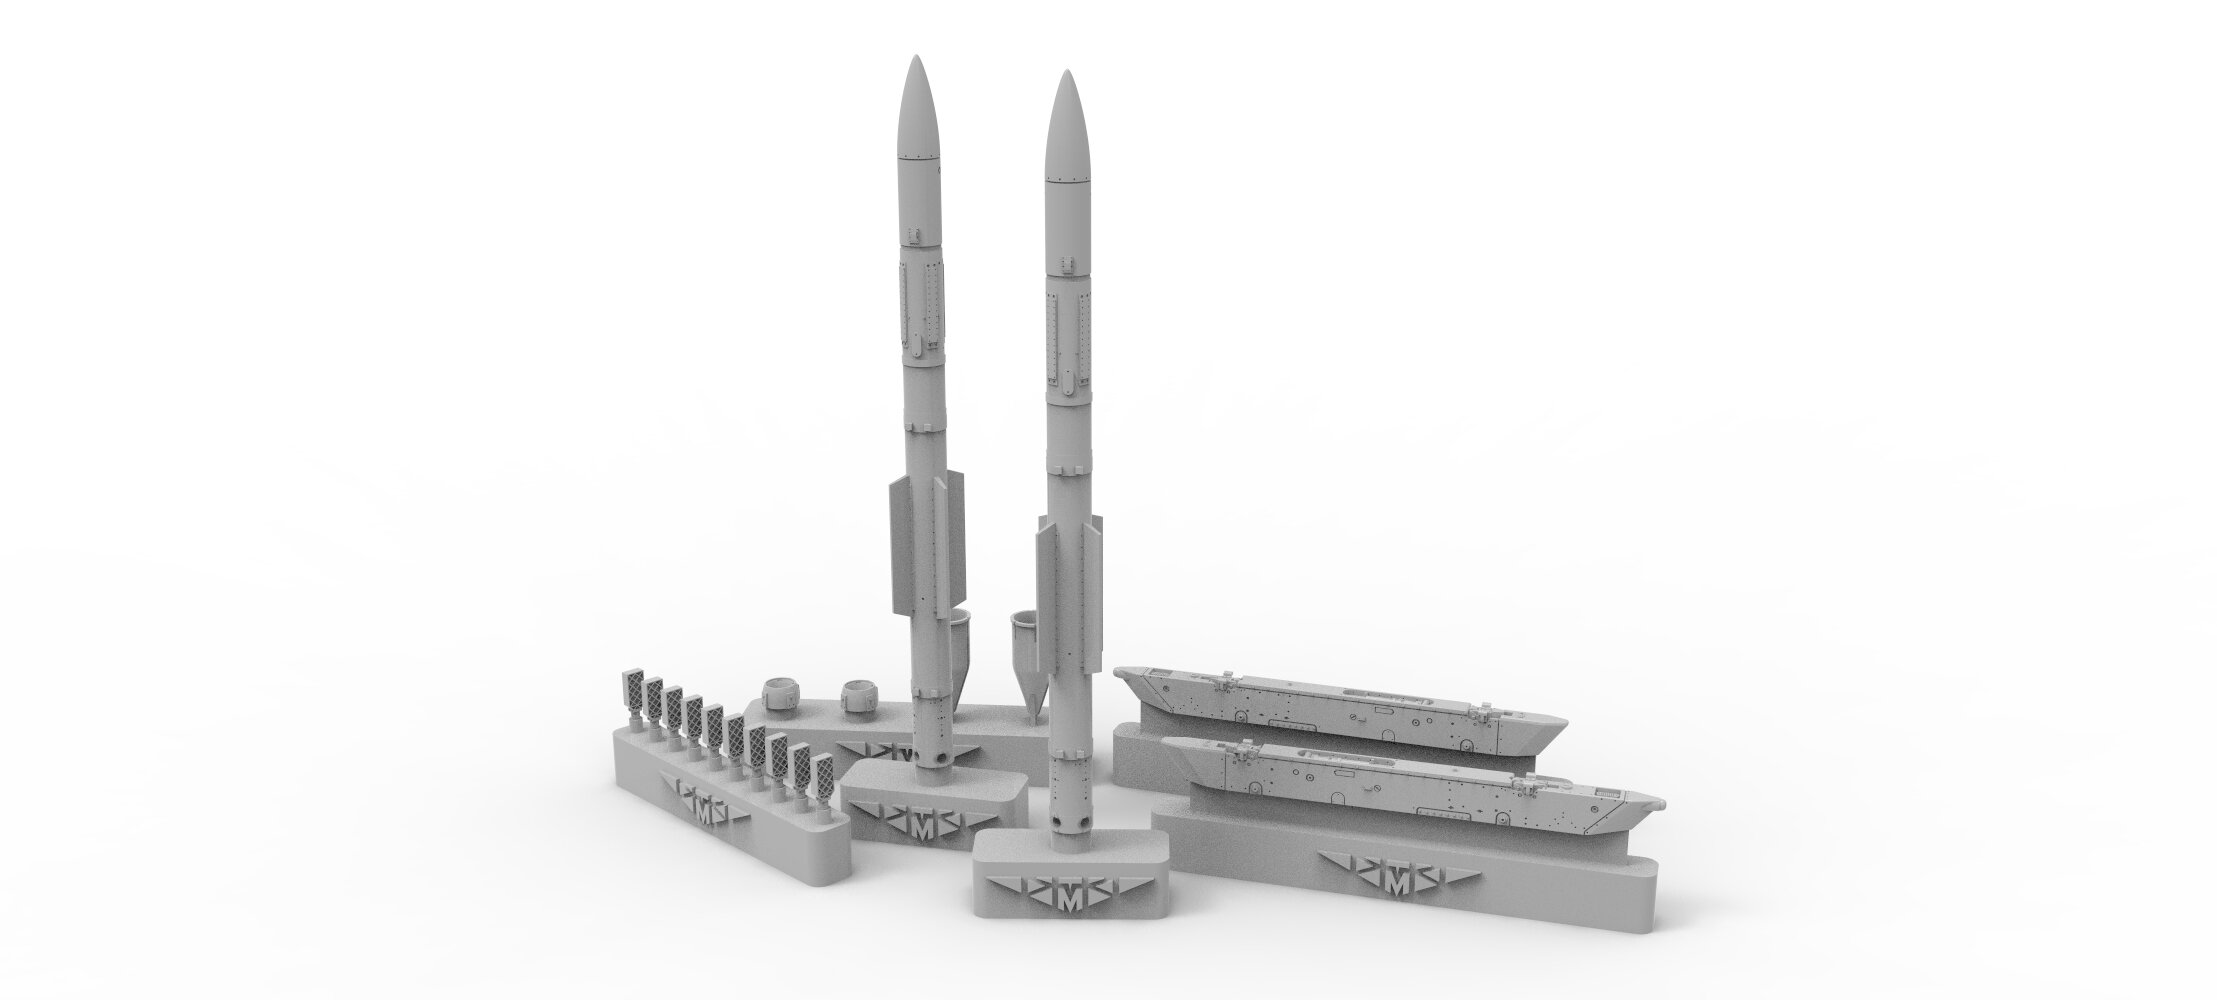 72207-1TMP управляемая ракета Р-77 (Не для свободной продажи)